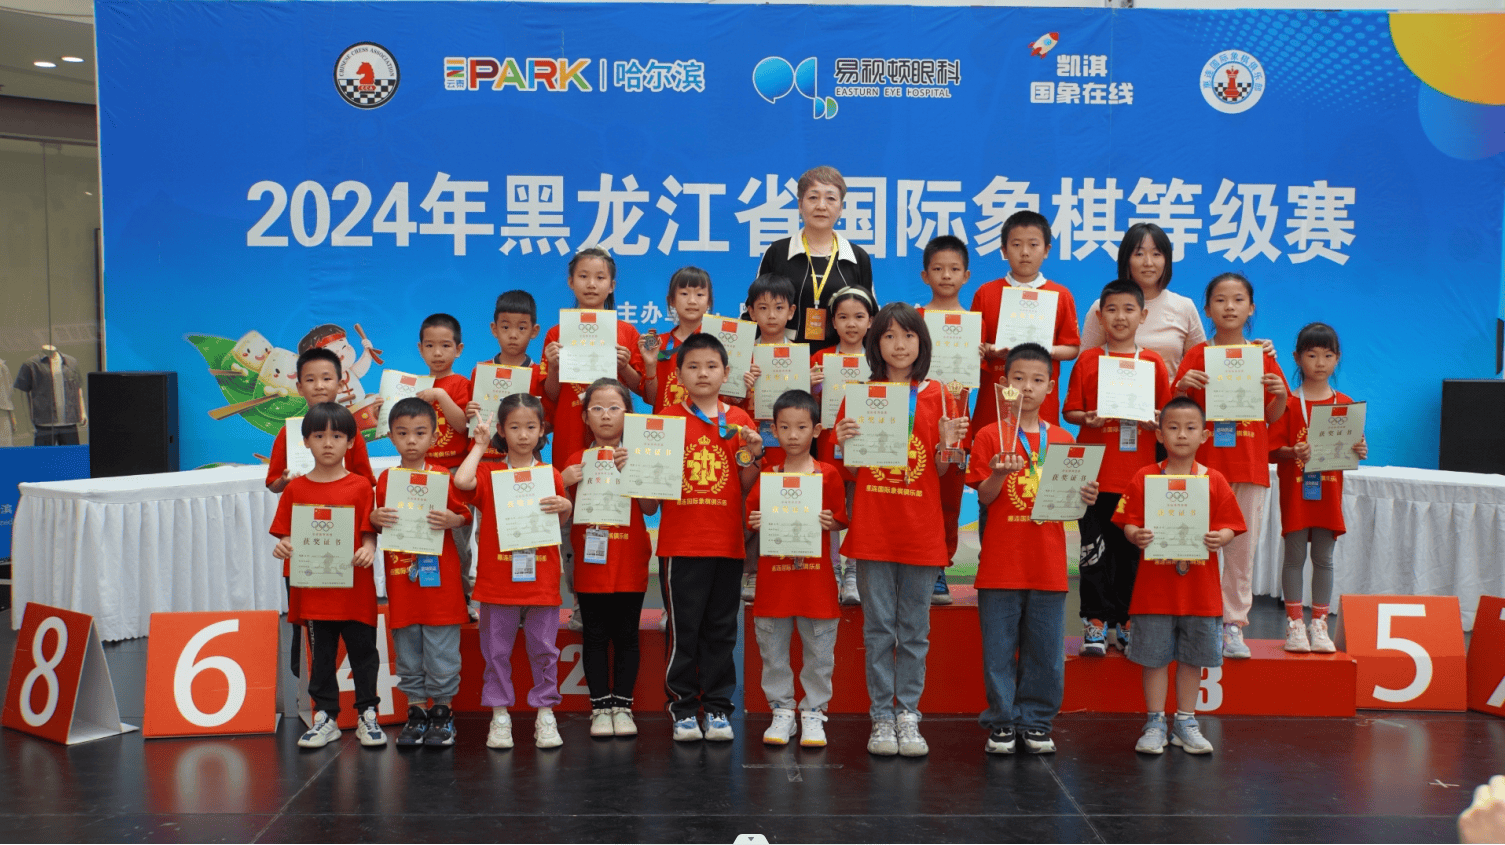 同时,比赛还促进了各市地间国际象棋交流,为黑龙江省国际象棋事业注入